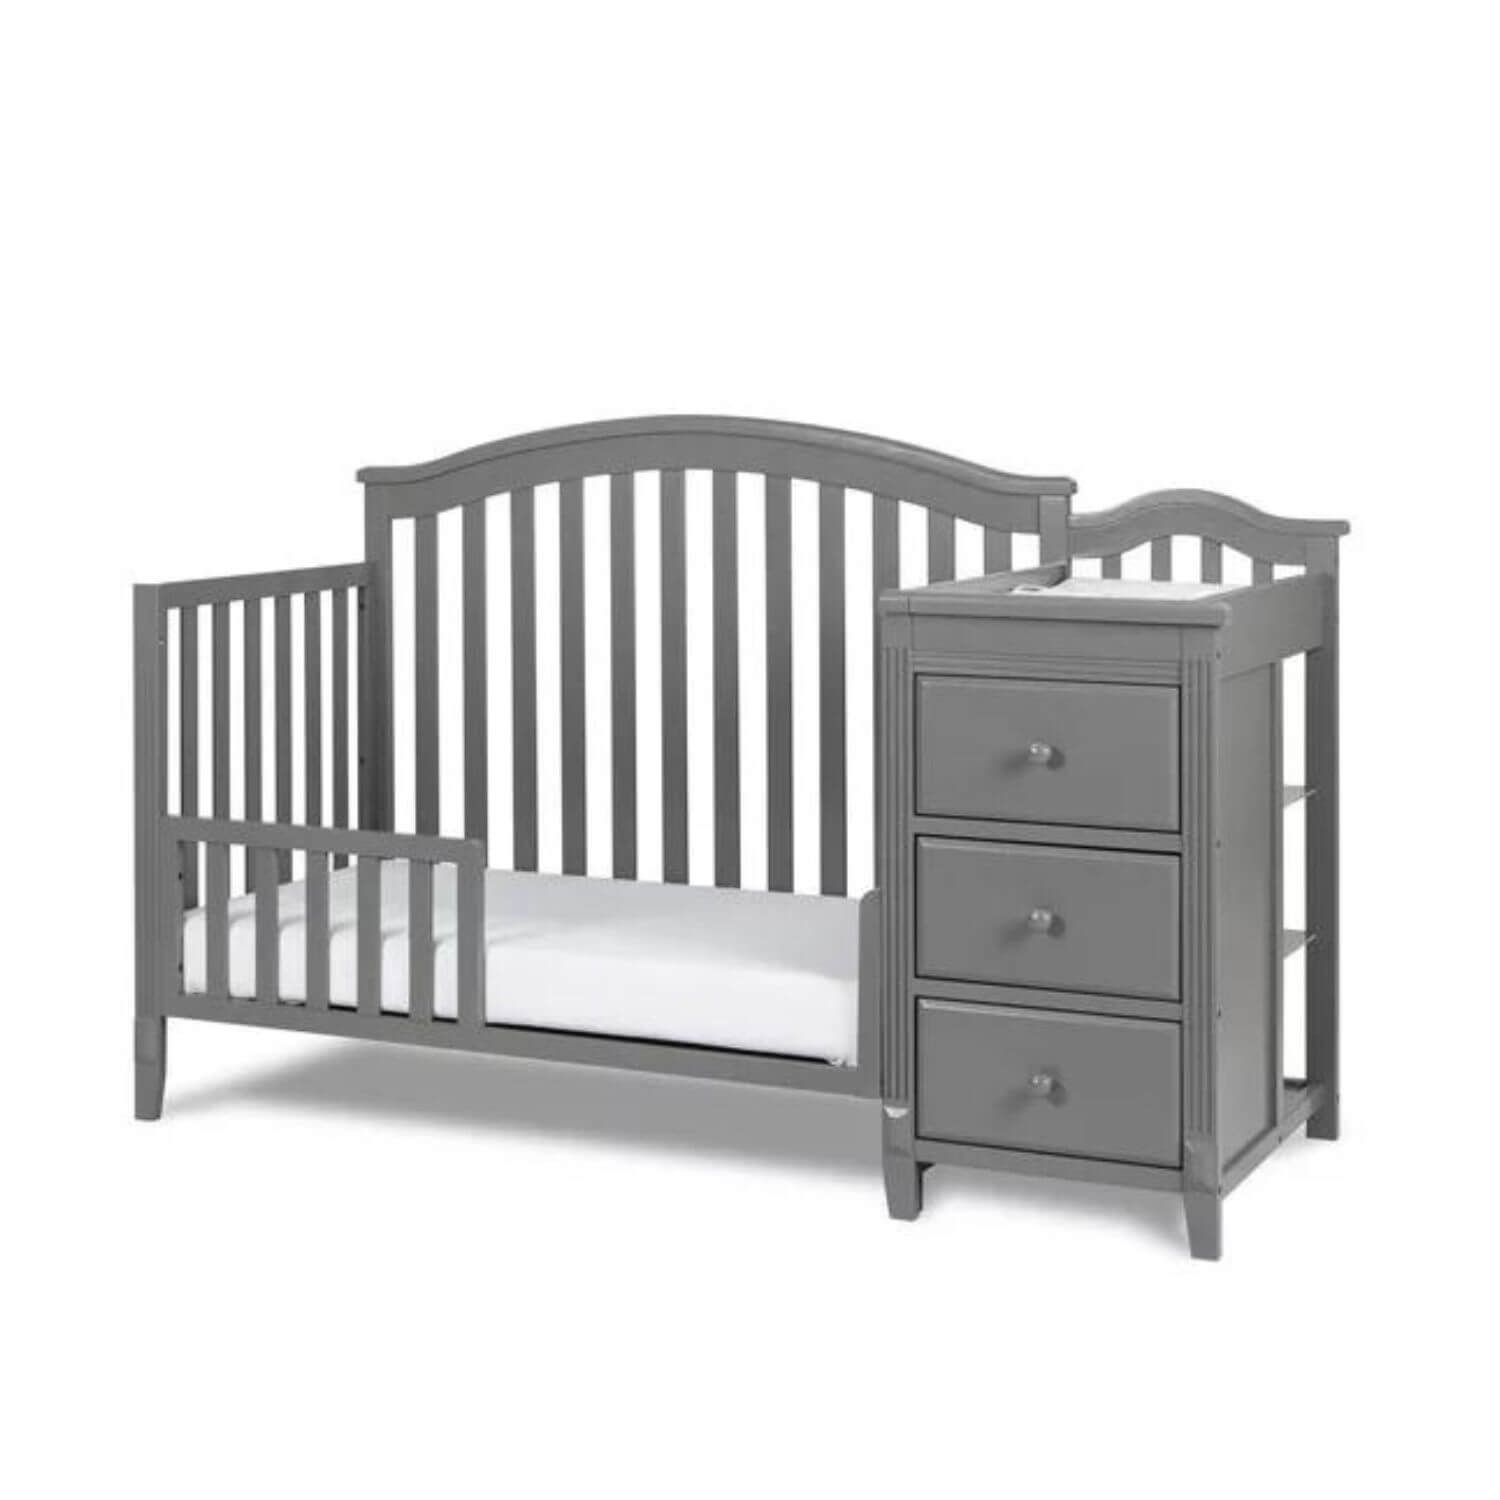 AFG Kali Toddler Bed Guardrail Grey